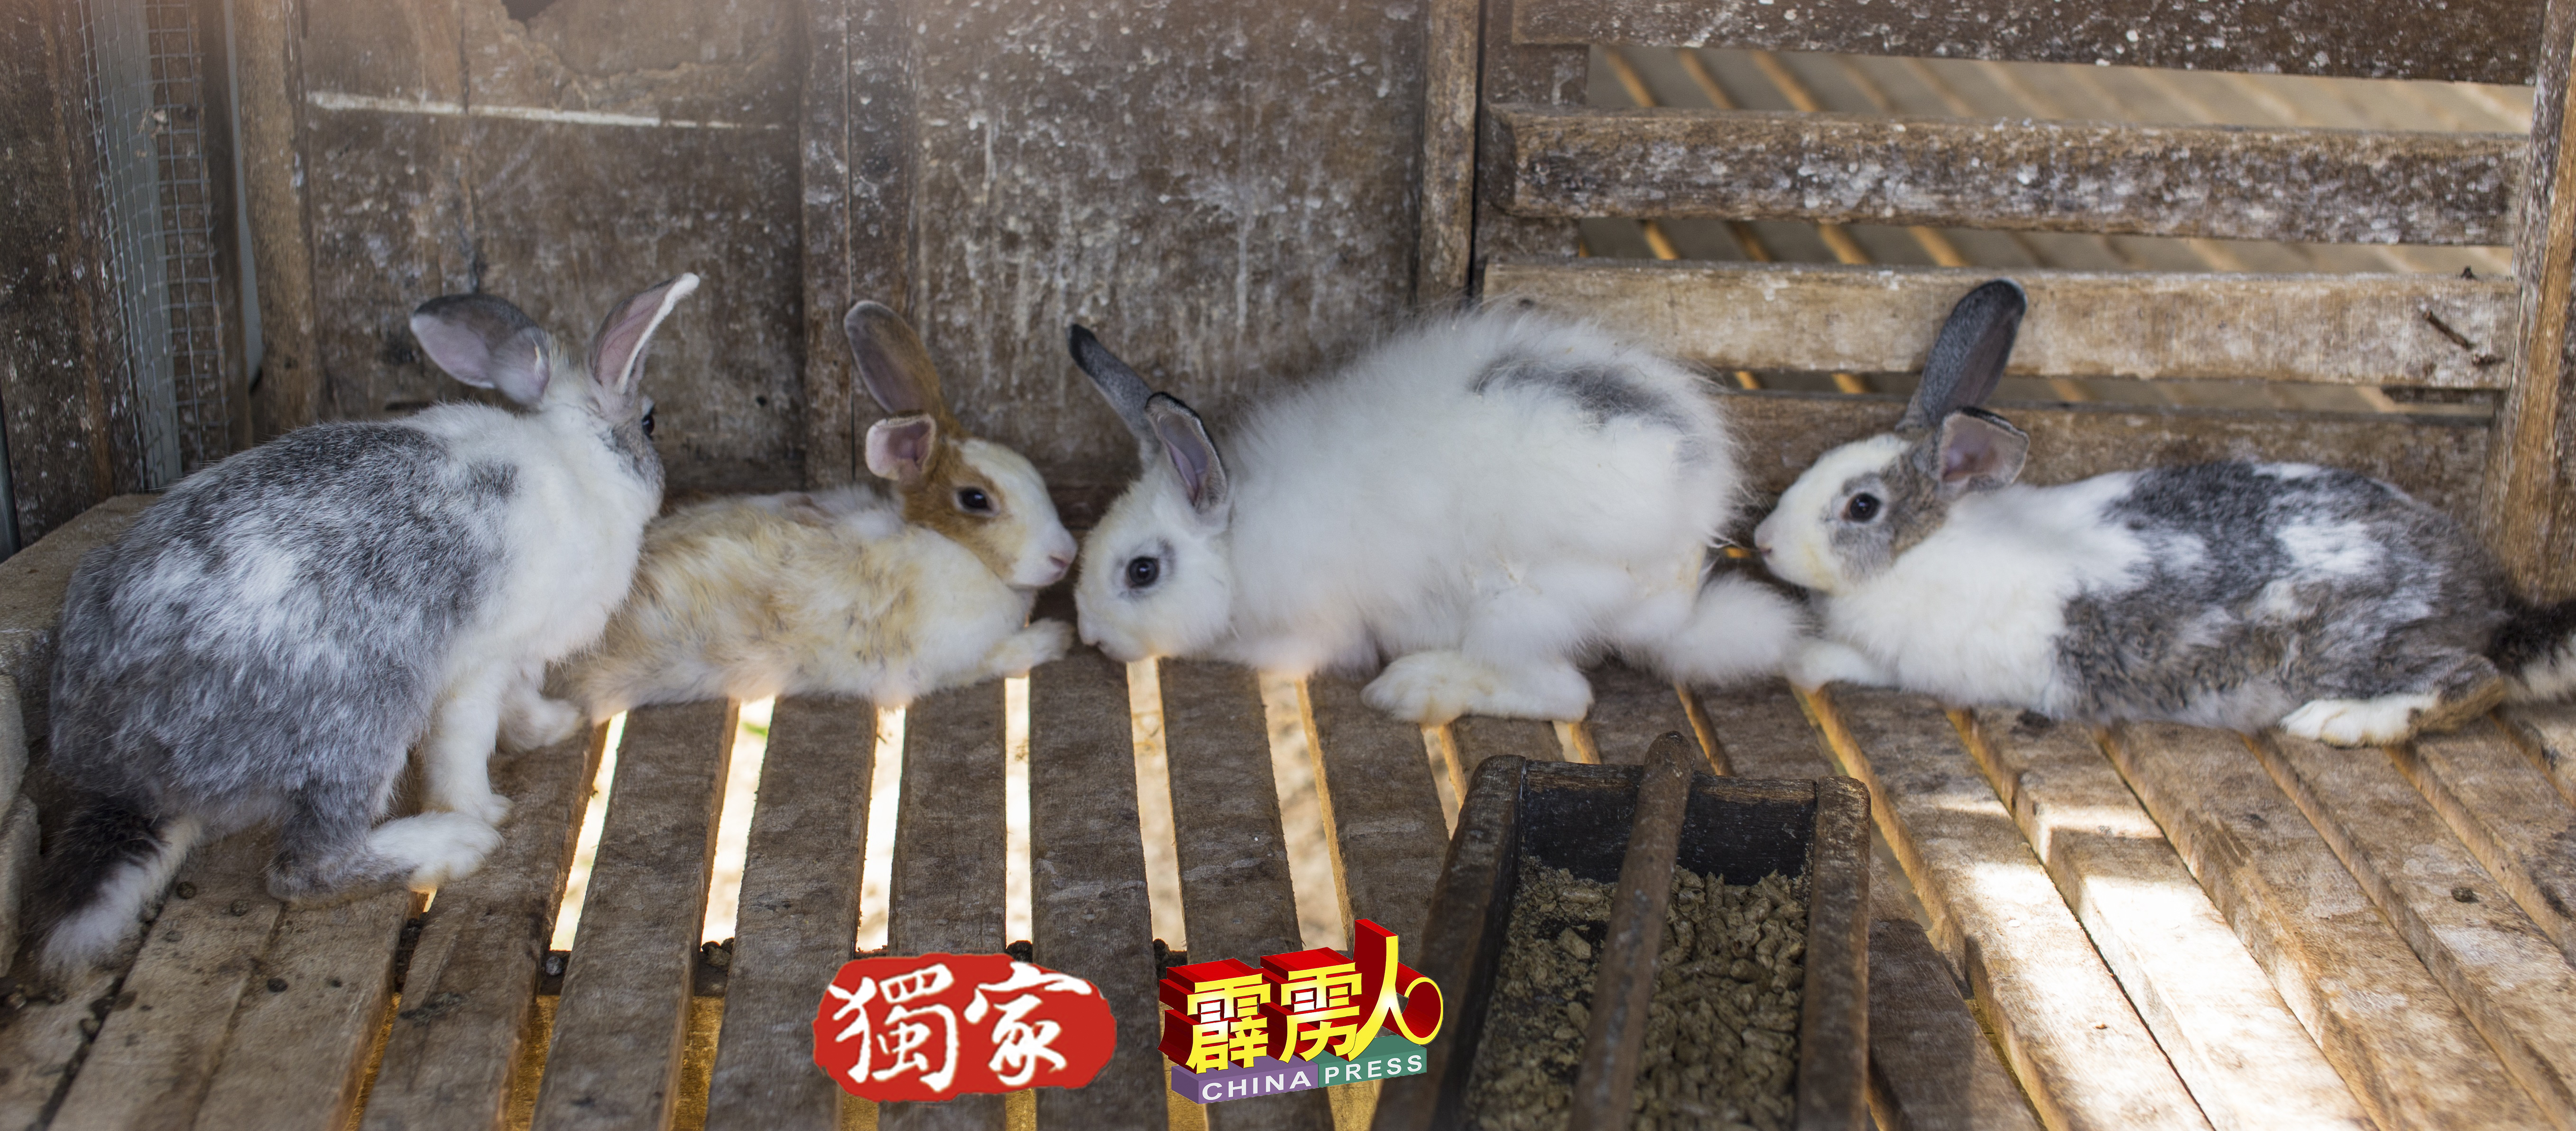 木寮存有缝隙，兔子的大小便透过缝隙坠地，不会留在窝居更卫生。